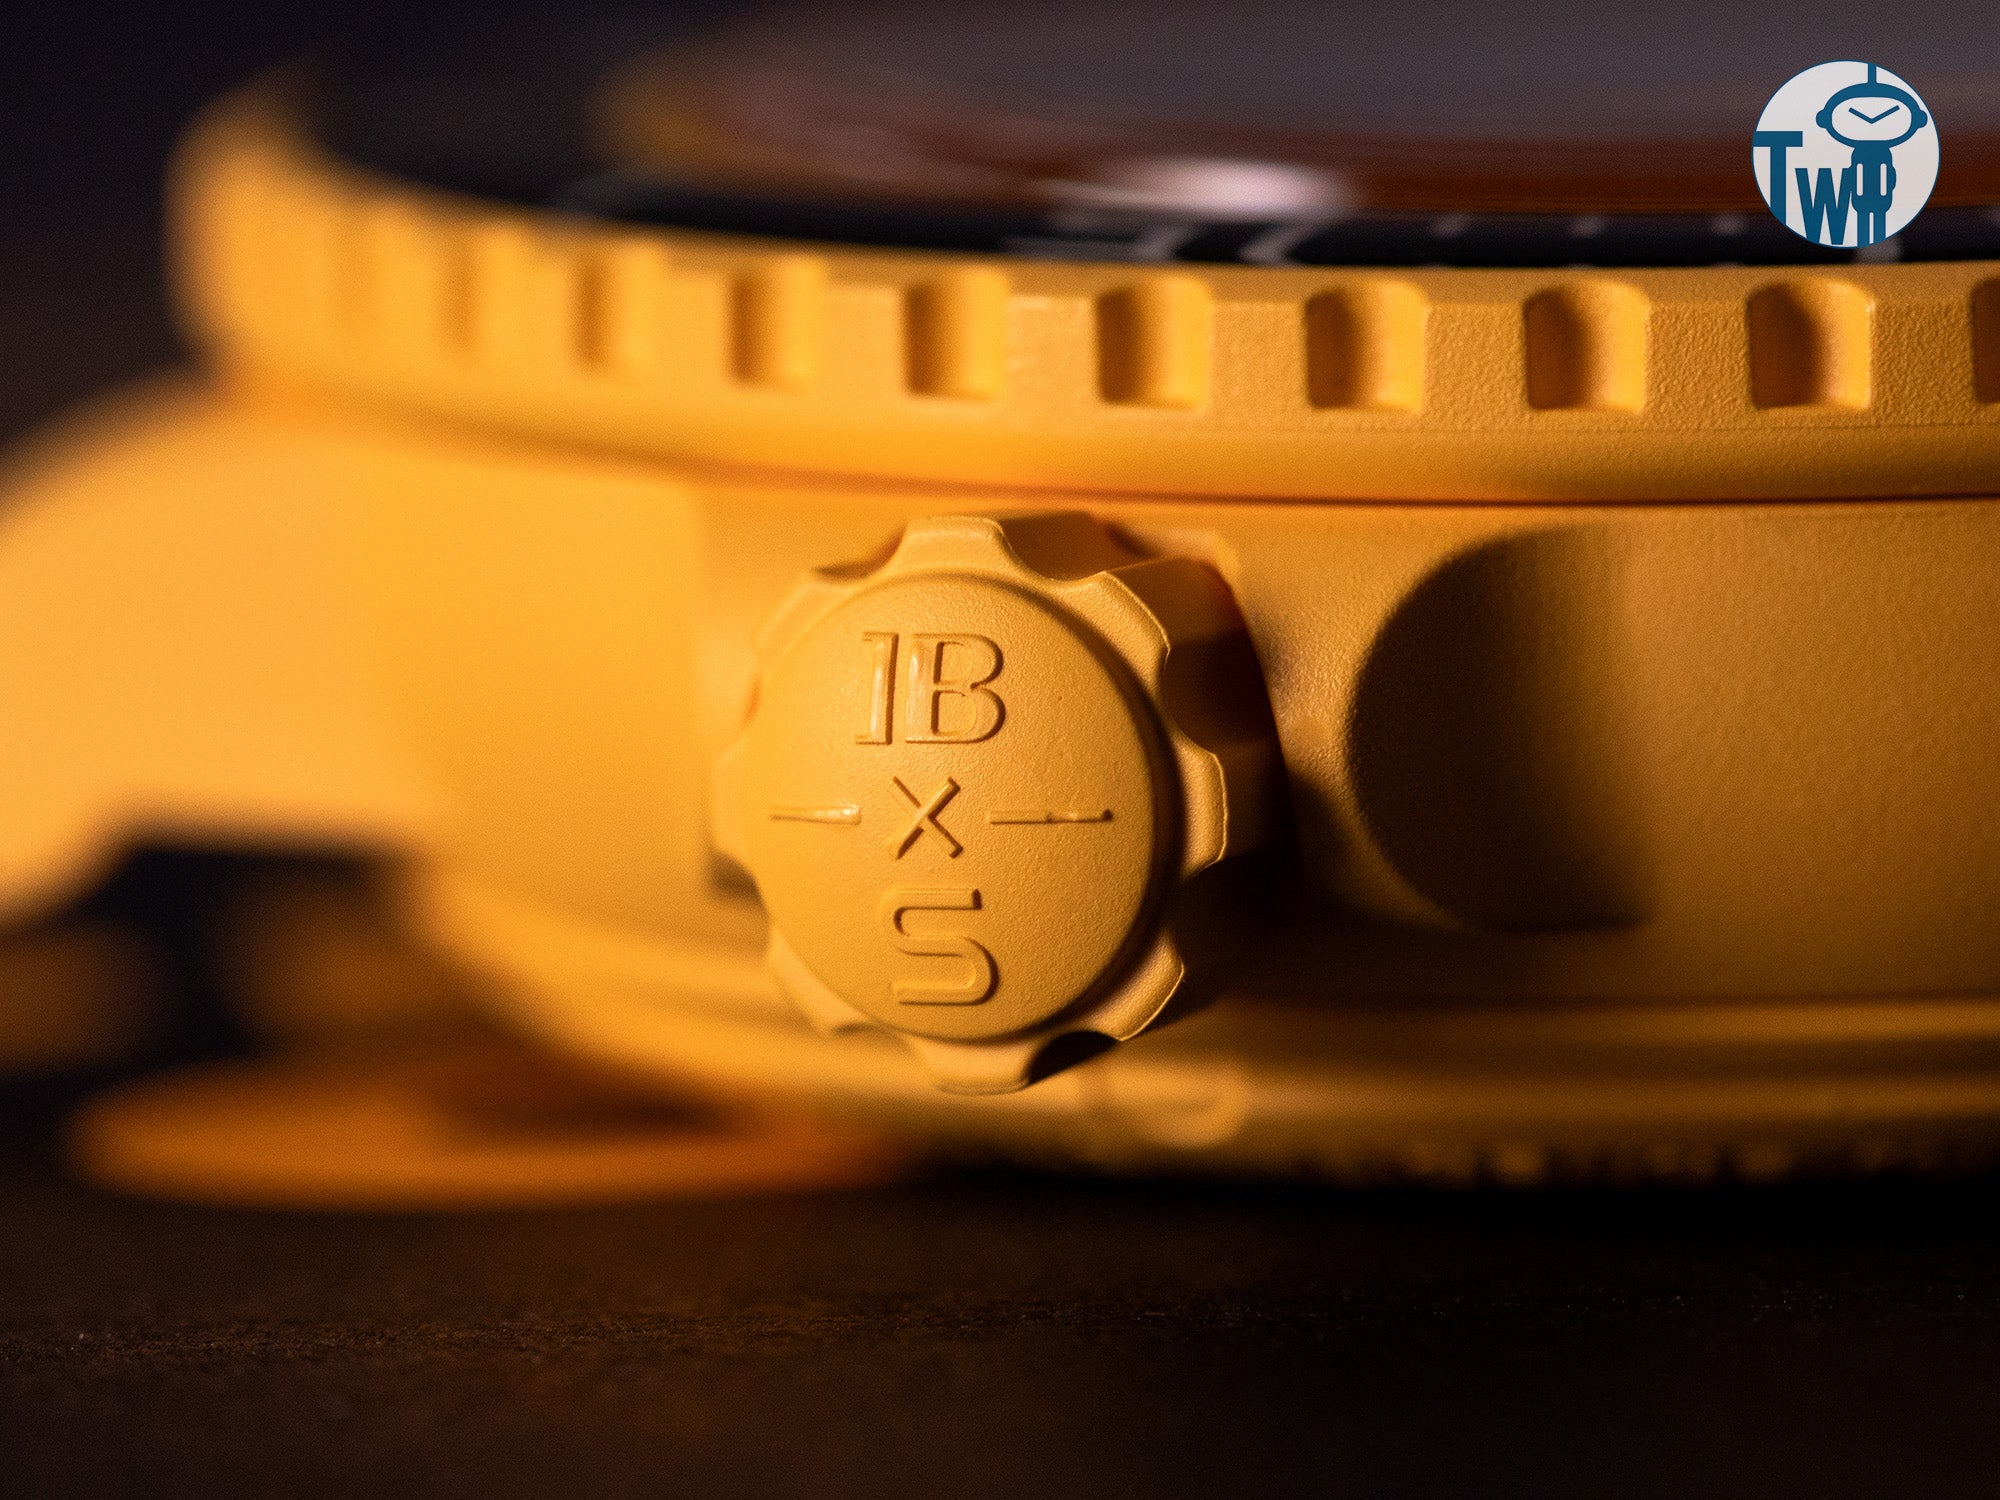 錶冠保留了經典的Fifty Fathoms設計，而錶殼上自豪地展示著「Swatch」，就像原始的Fifty Fathoms展示著「Blancpain」一樣。